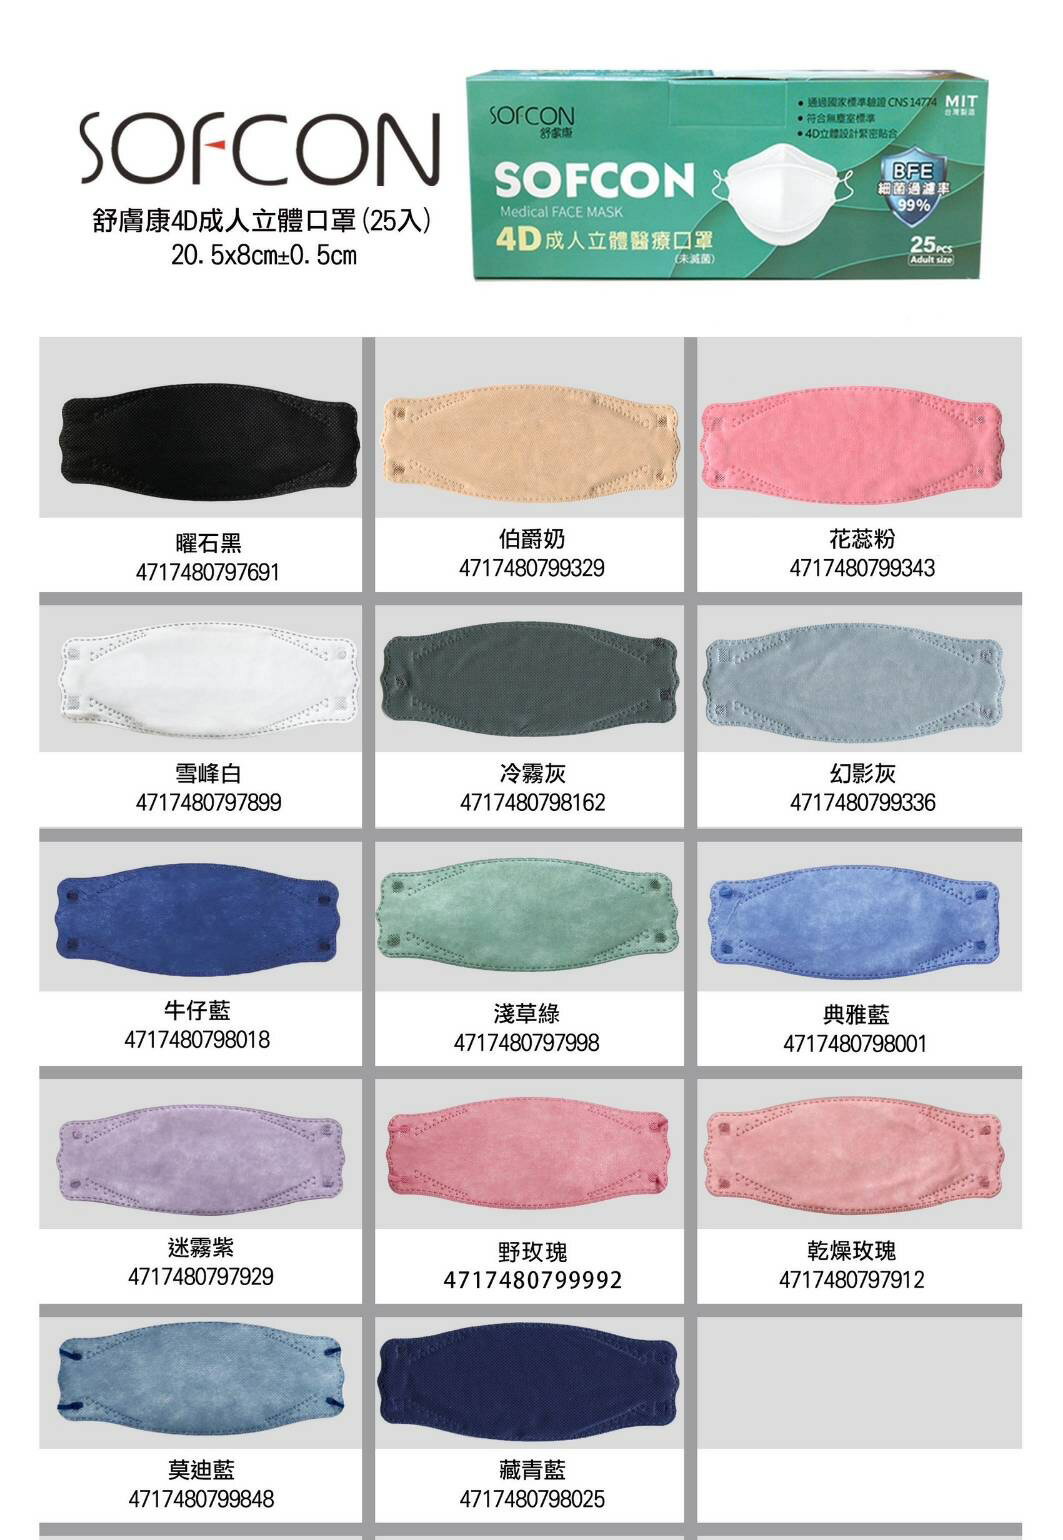 口罩 韓國 魚形 KF94 舒膚康 聚泰4D醫療用立體口罩25入 成人用 多色可選 現貨 歐美藥局